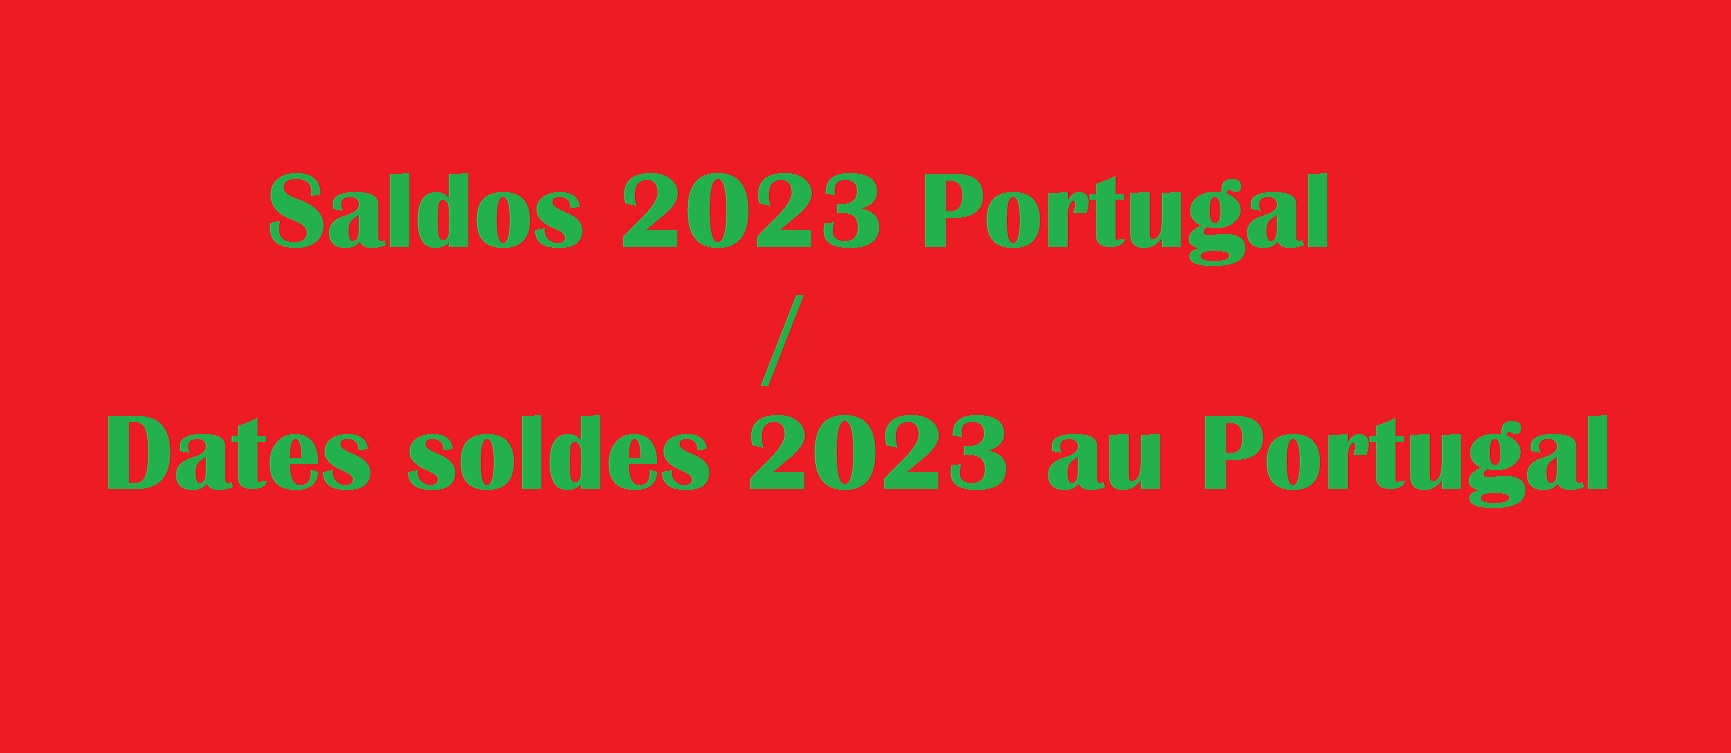 Les dates des soldes au Portugal en 2023